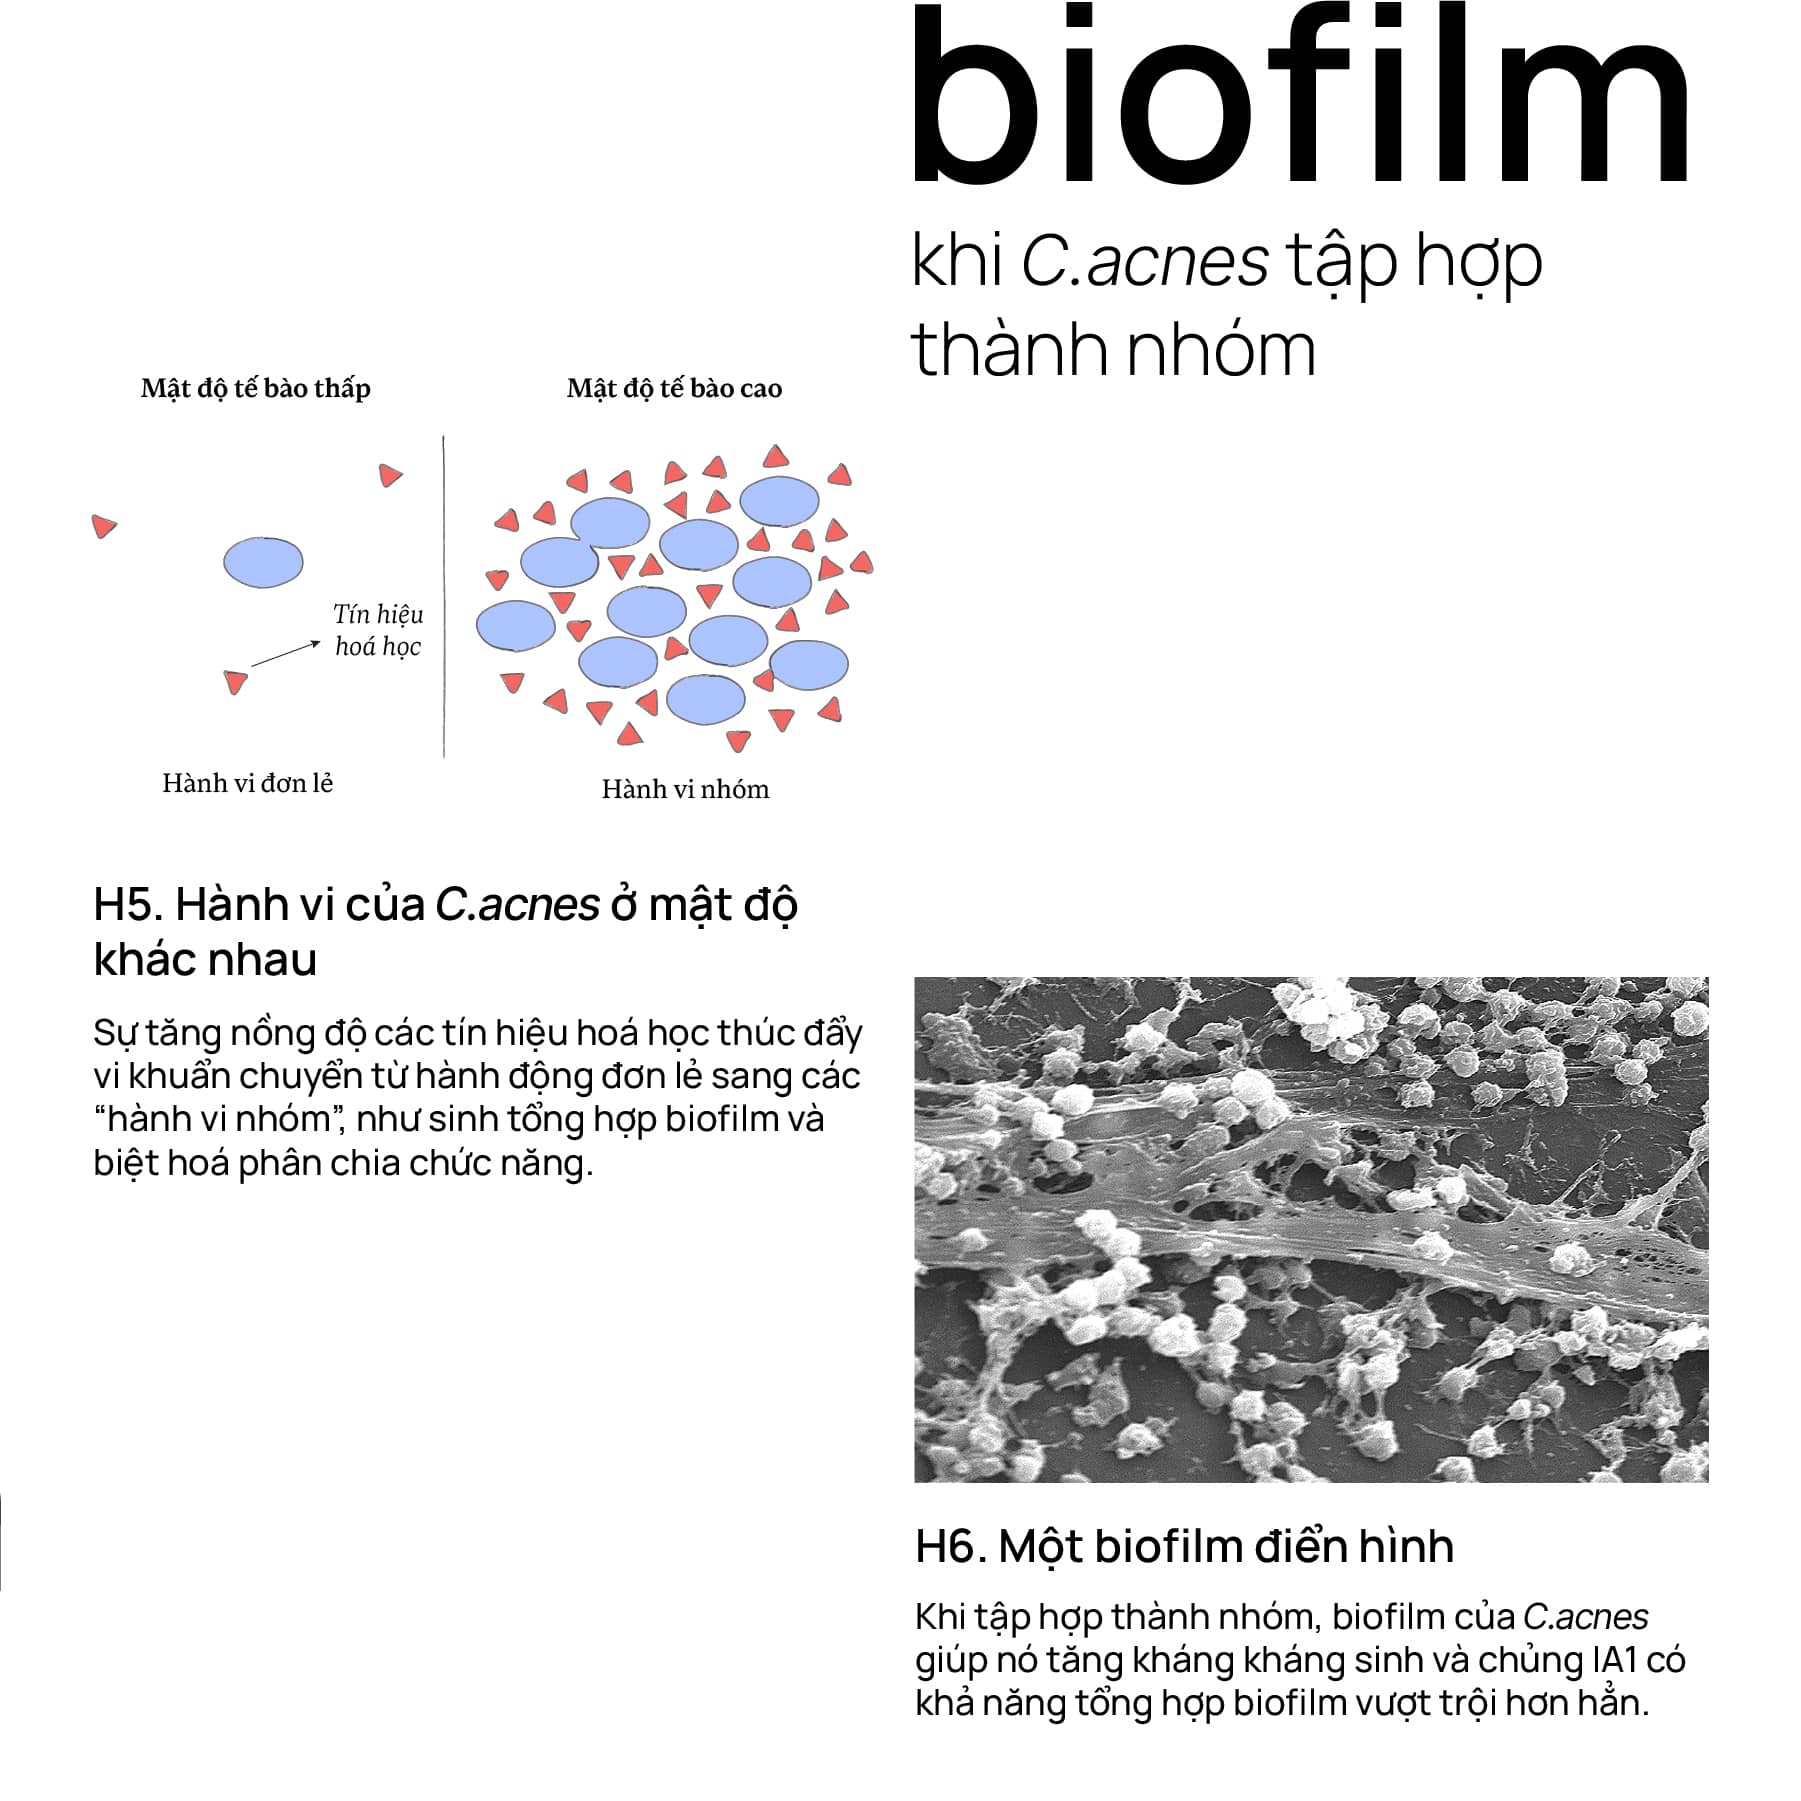 Biofilm khi C.acnes tập hợp thành nhóm